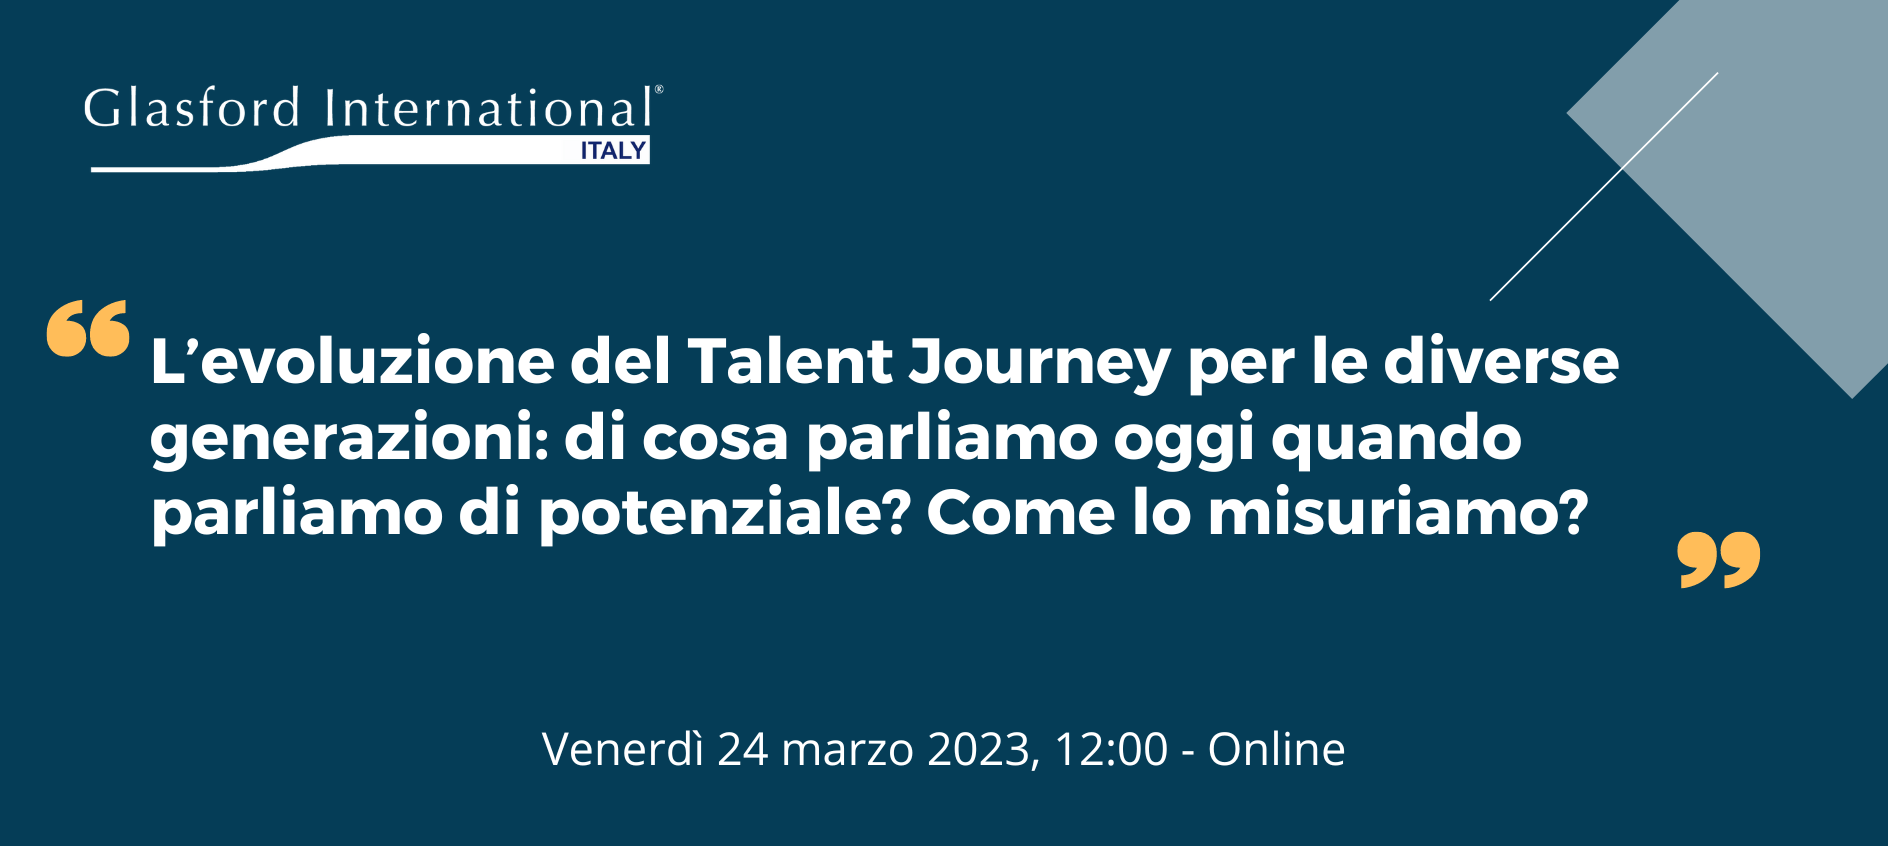 L’evoluzione del Talent Journey per le diverse generazioni - Glasford International Italy